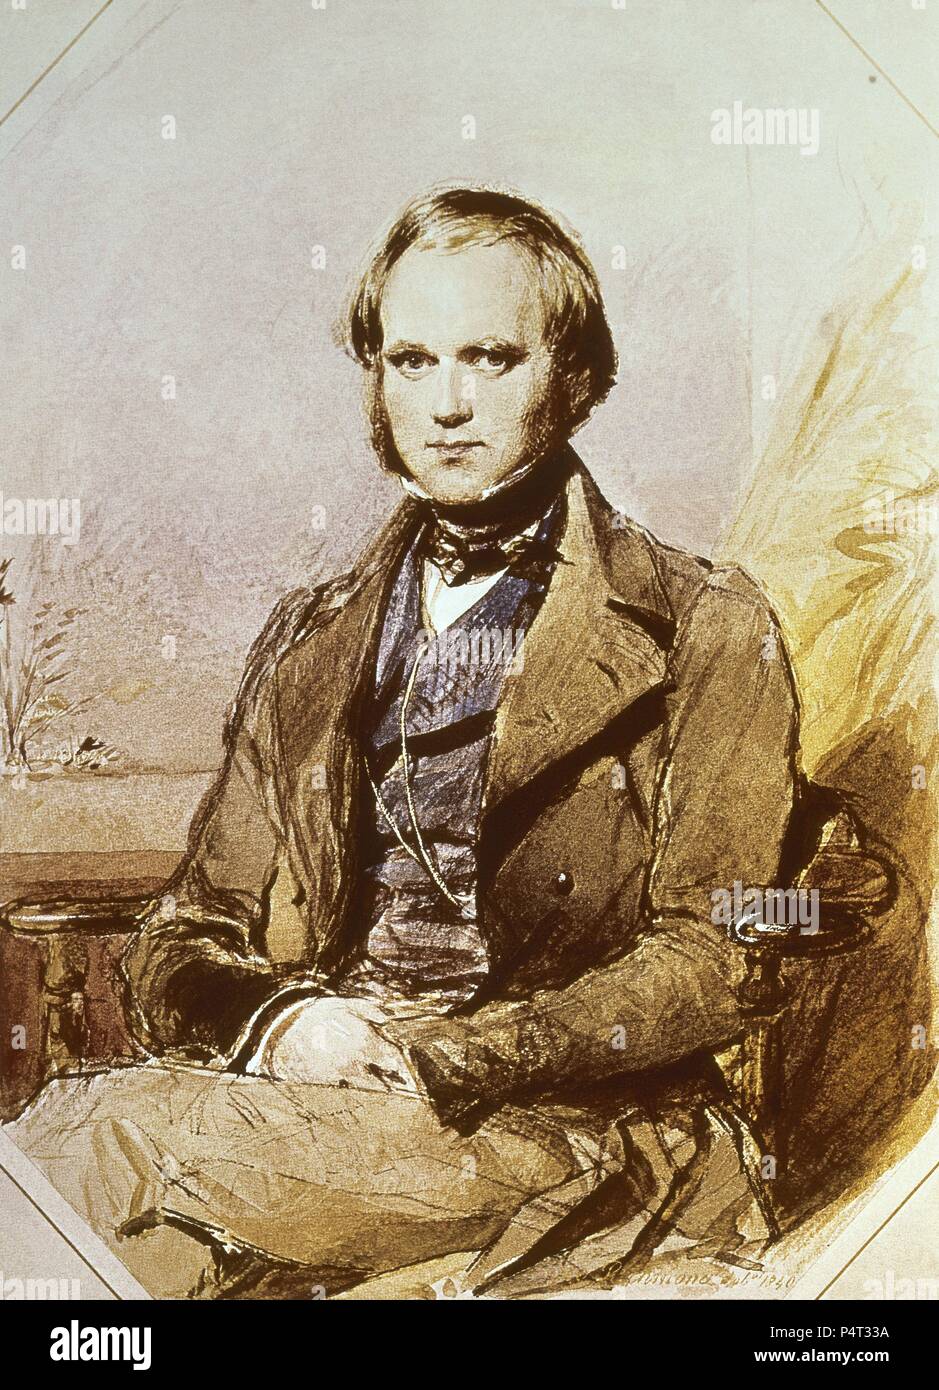 Porträt von Charles Robert Darwin (1809-1882), britischer Naturforscher, der die Transmutation der Arten untersucht. London, Chirurg Haus. Ort: CHIRURG HOUSE, LONDON, ENGLAND. Stockfoto